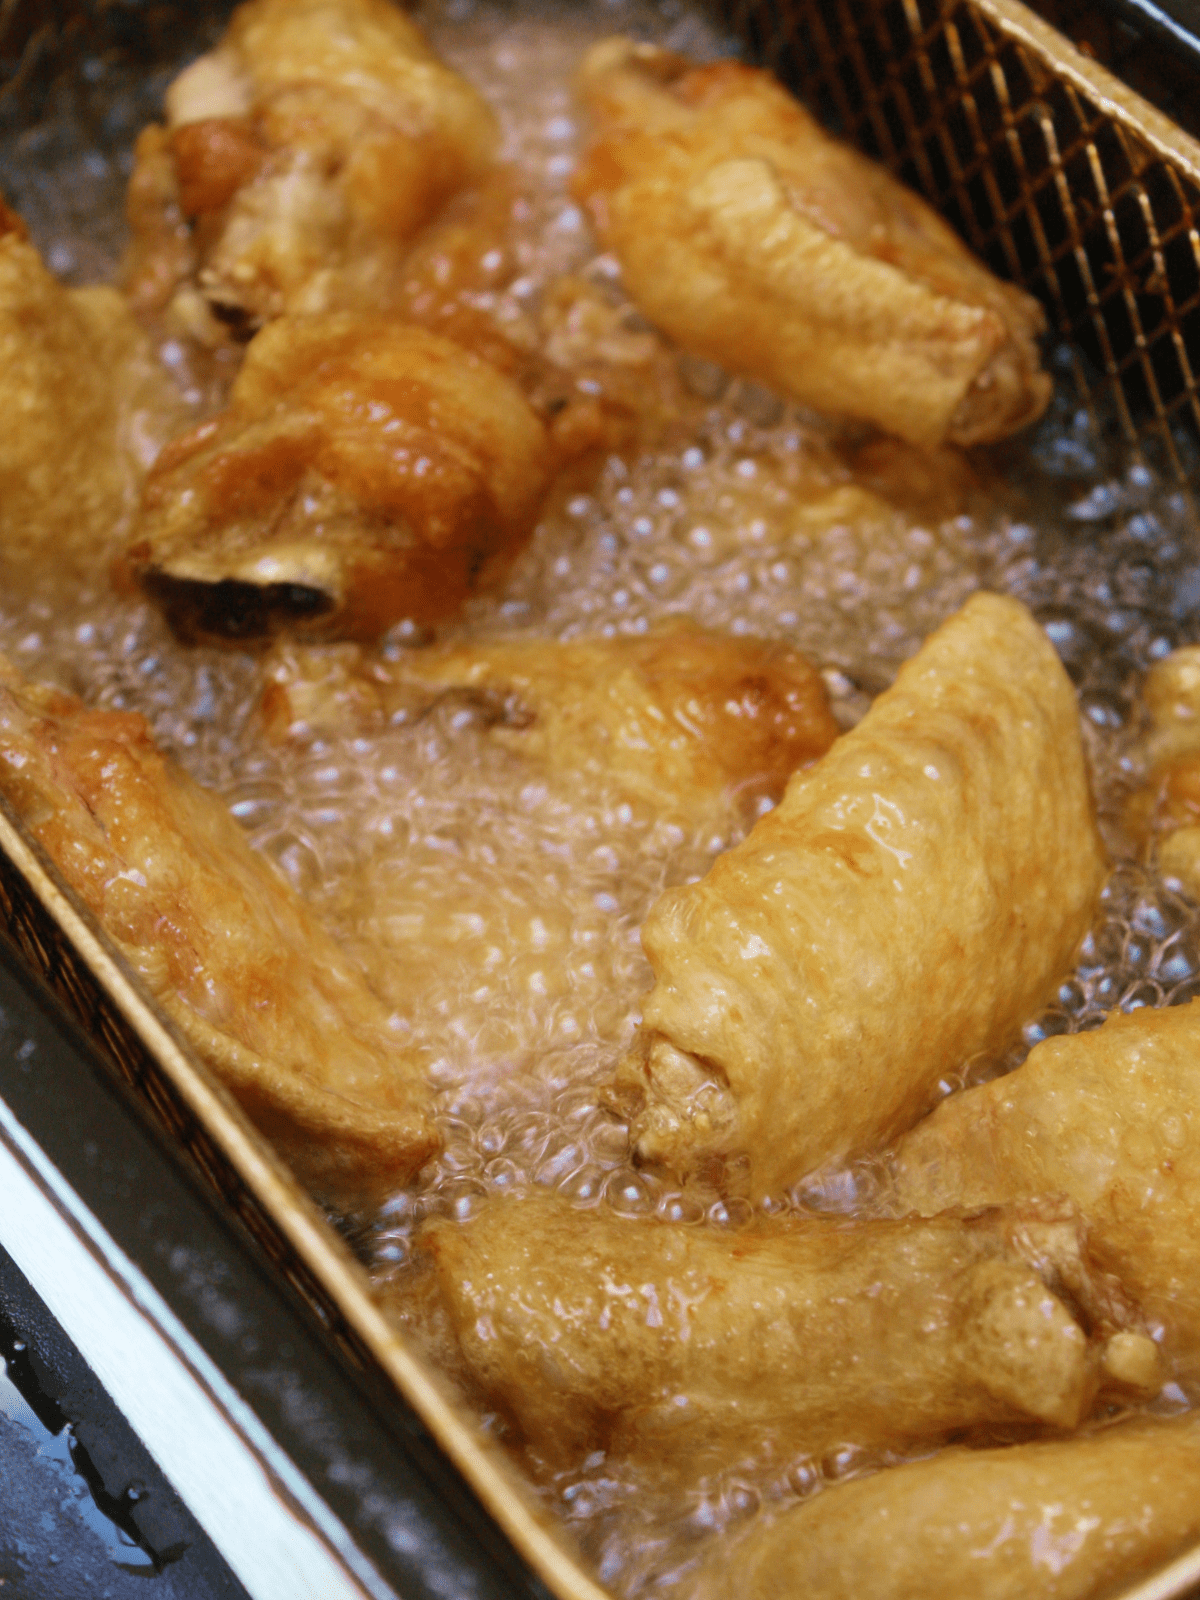 Wings in the deep fryer cooking in oil.